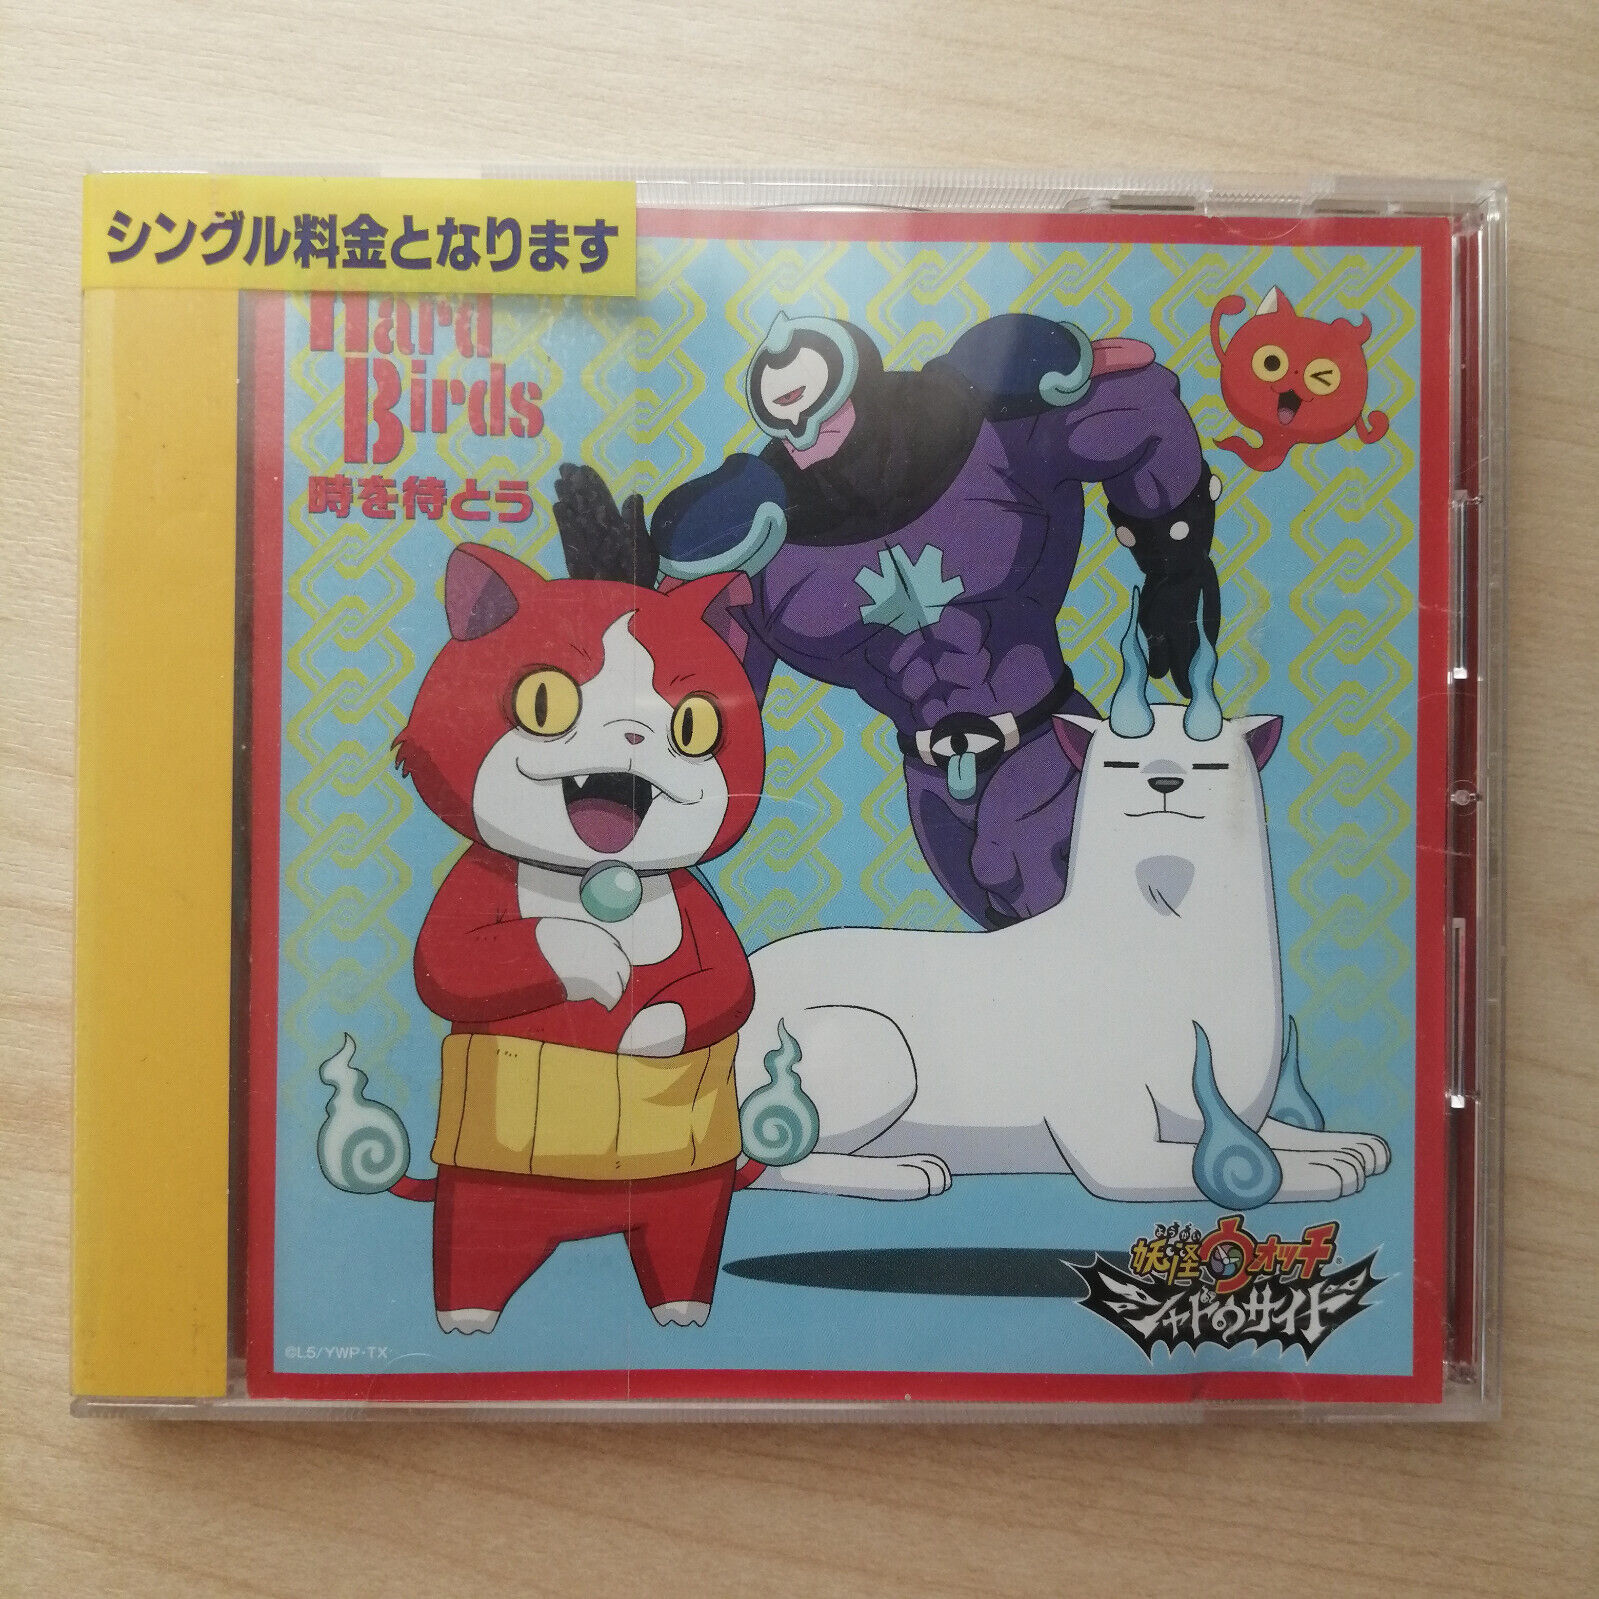 OST. Yo-kai Watch Shadowside by HardBirds Japan Anime Music CD Single w/obi